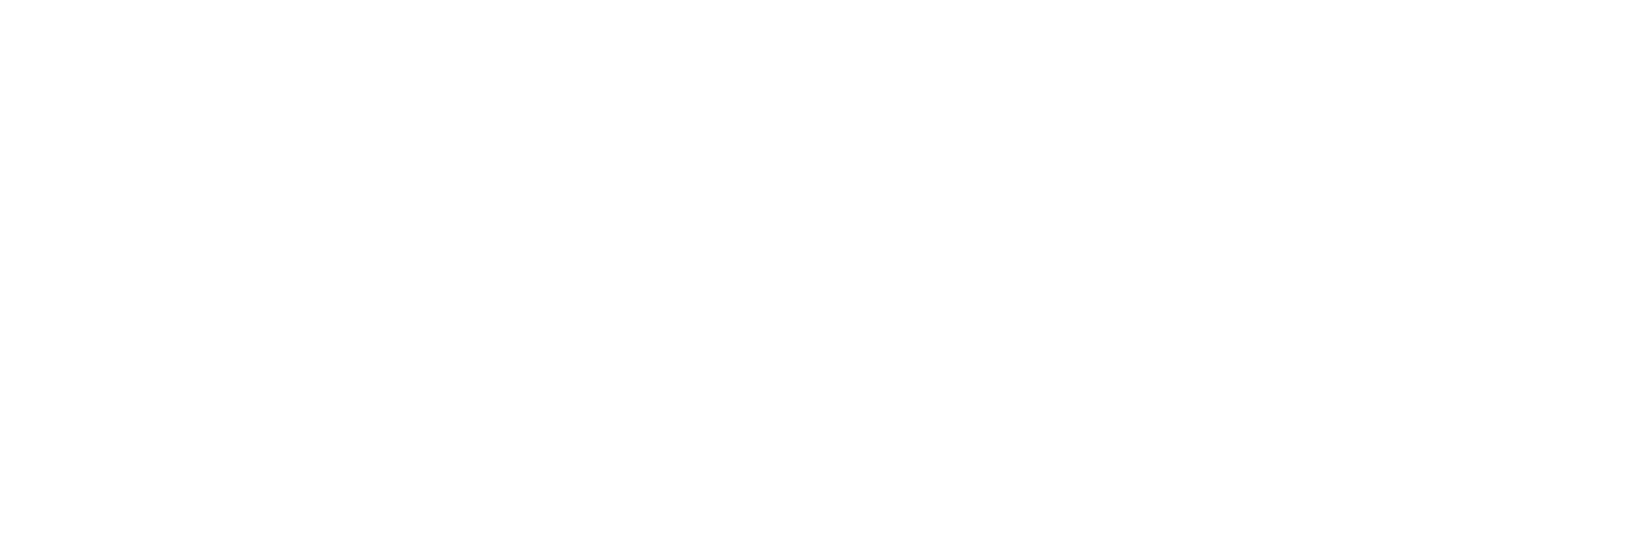 Client Logo Plastiq logo